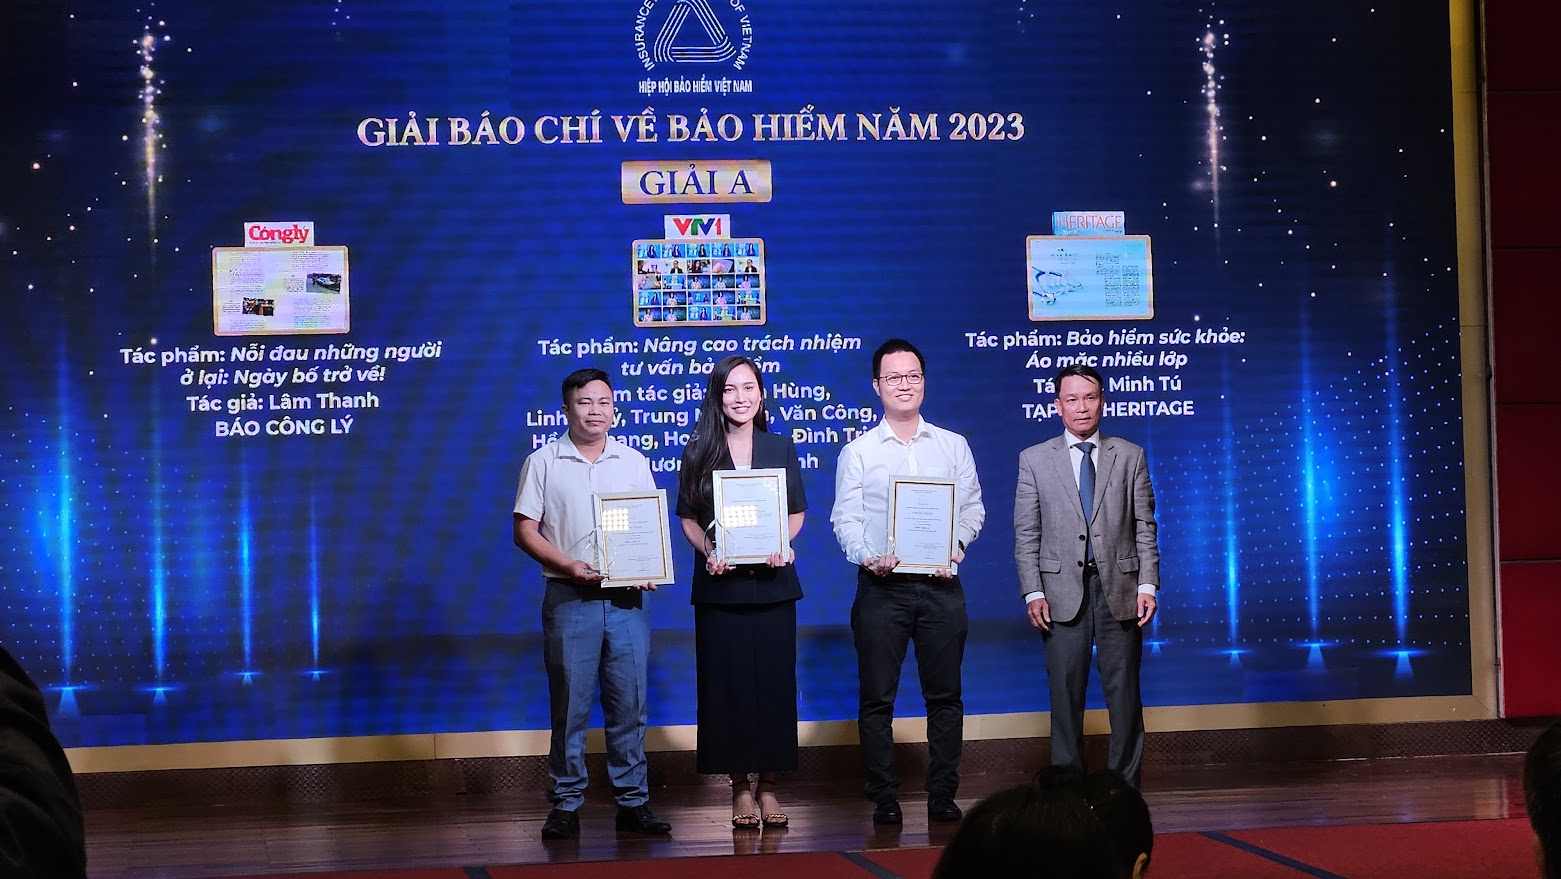 Nguyễn Đức Lợi, Phó Chủ tịch thường trực Hội Nhà báo Việt Nam, Trưởng ban giám khảo